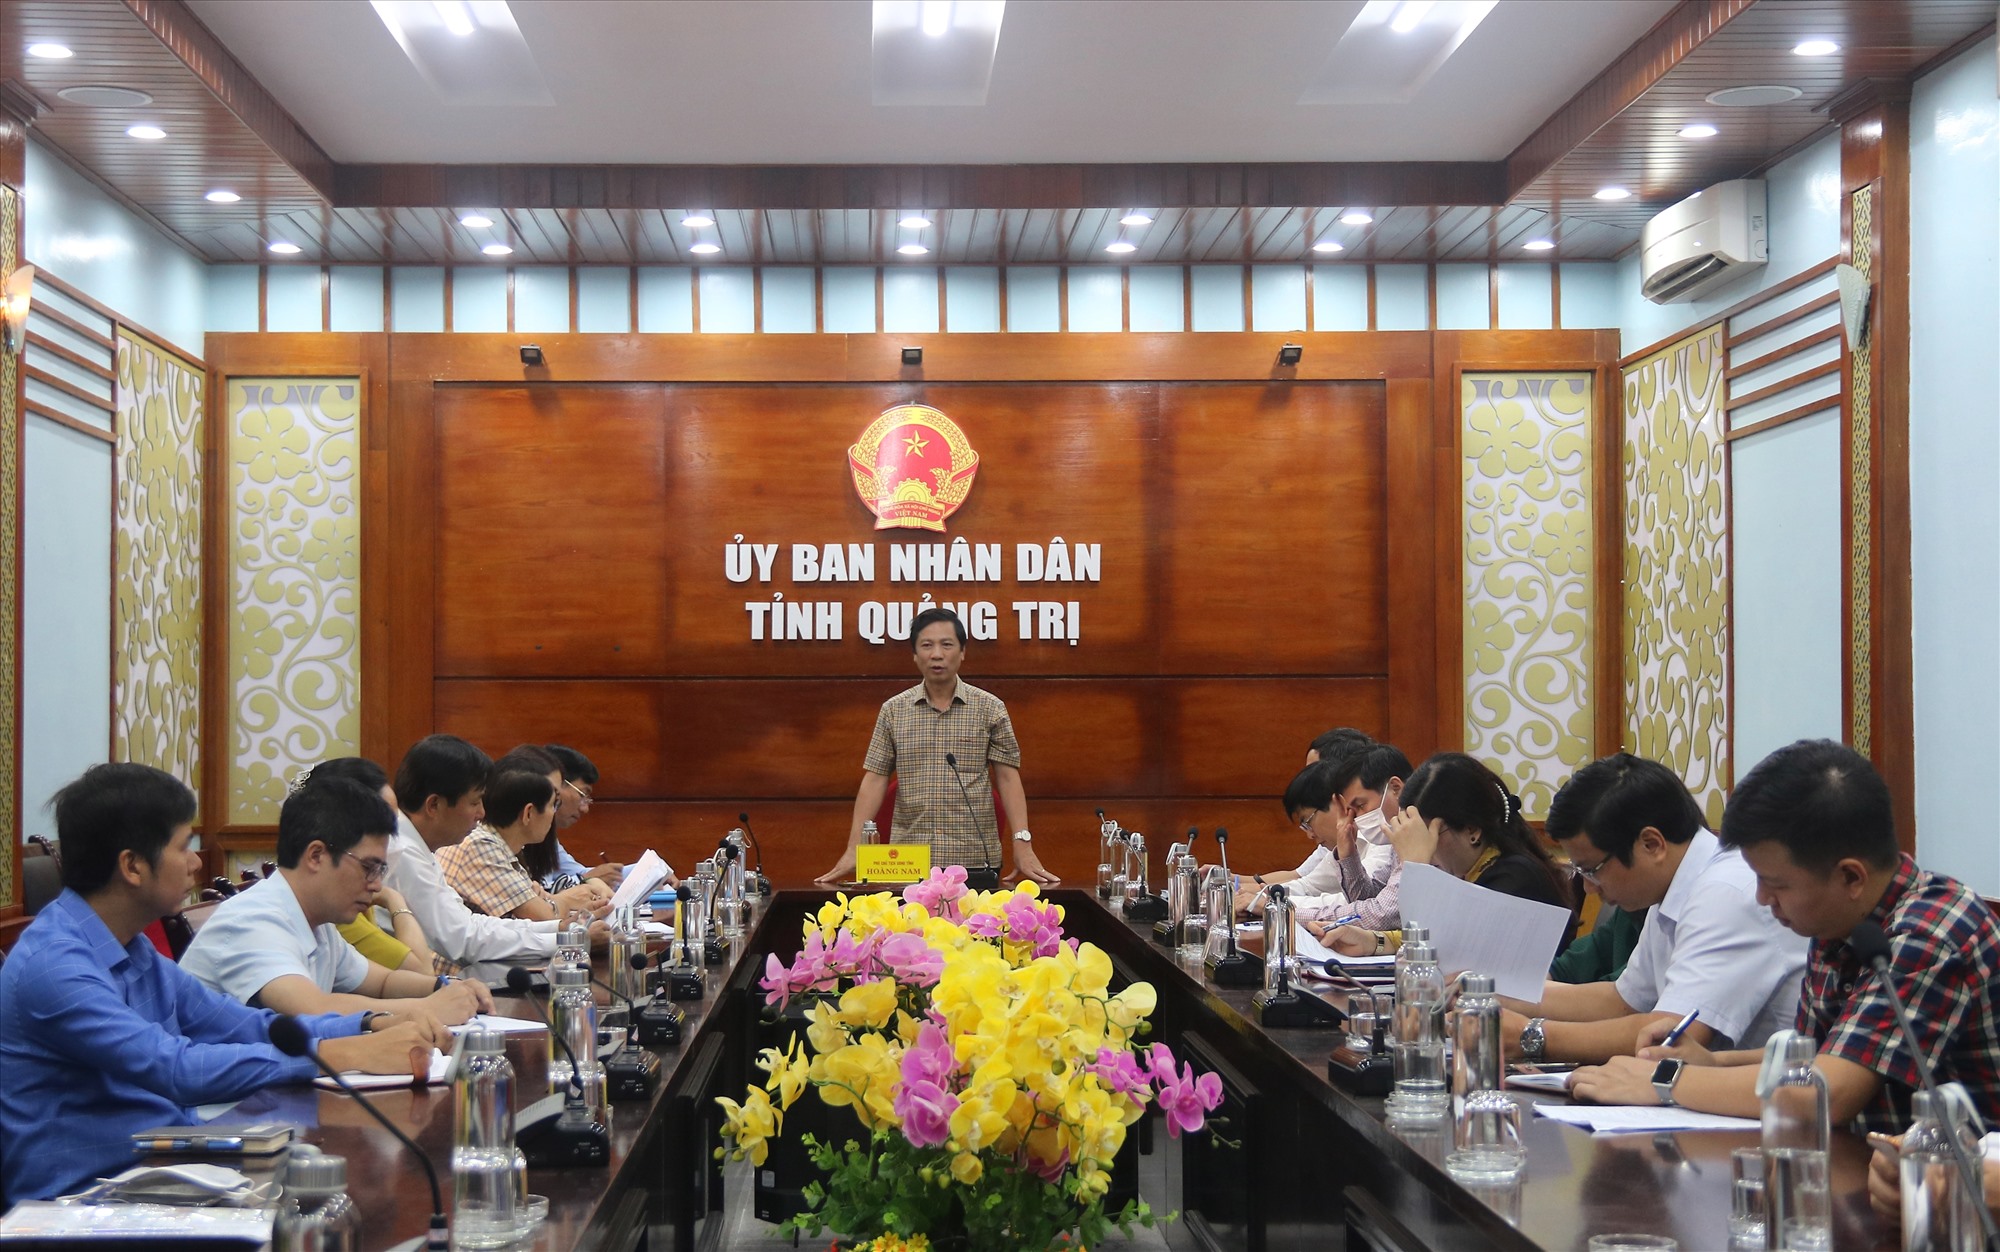 Phó Chủ tịch UBND tỉnh Hoàng Nam nhấn mạnh, việc tổ chức các tuyến phố đêm và hoạt động kinh tế về đêm sẽ góp phần thúc đẩy du lịch- ngành kinh tế mũi nhọn của tỉnh phát triển nhanh- Ảnh: N.B